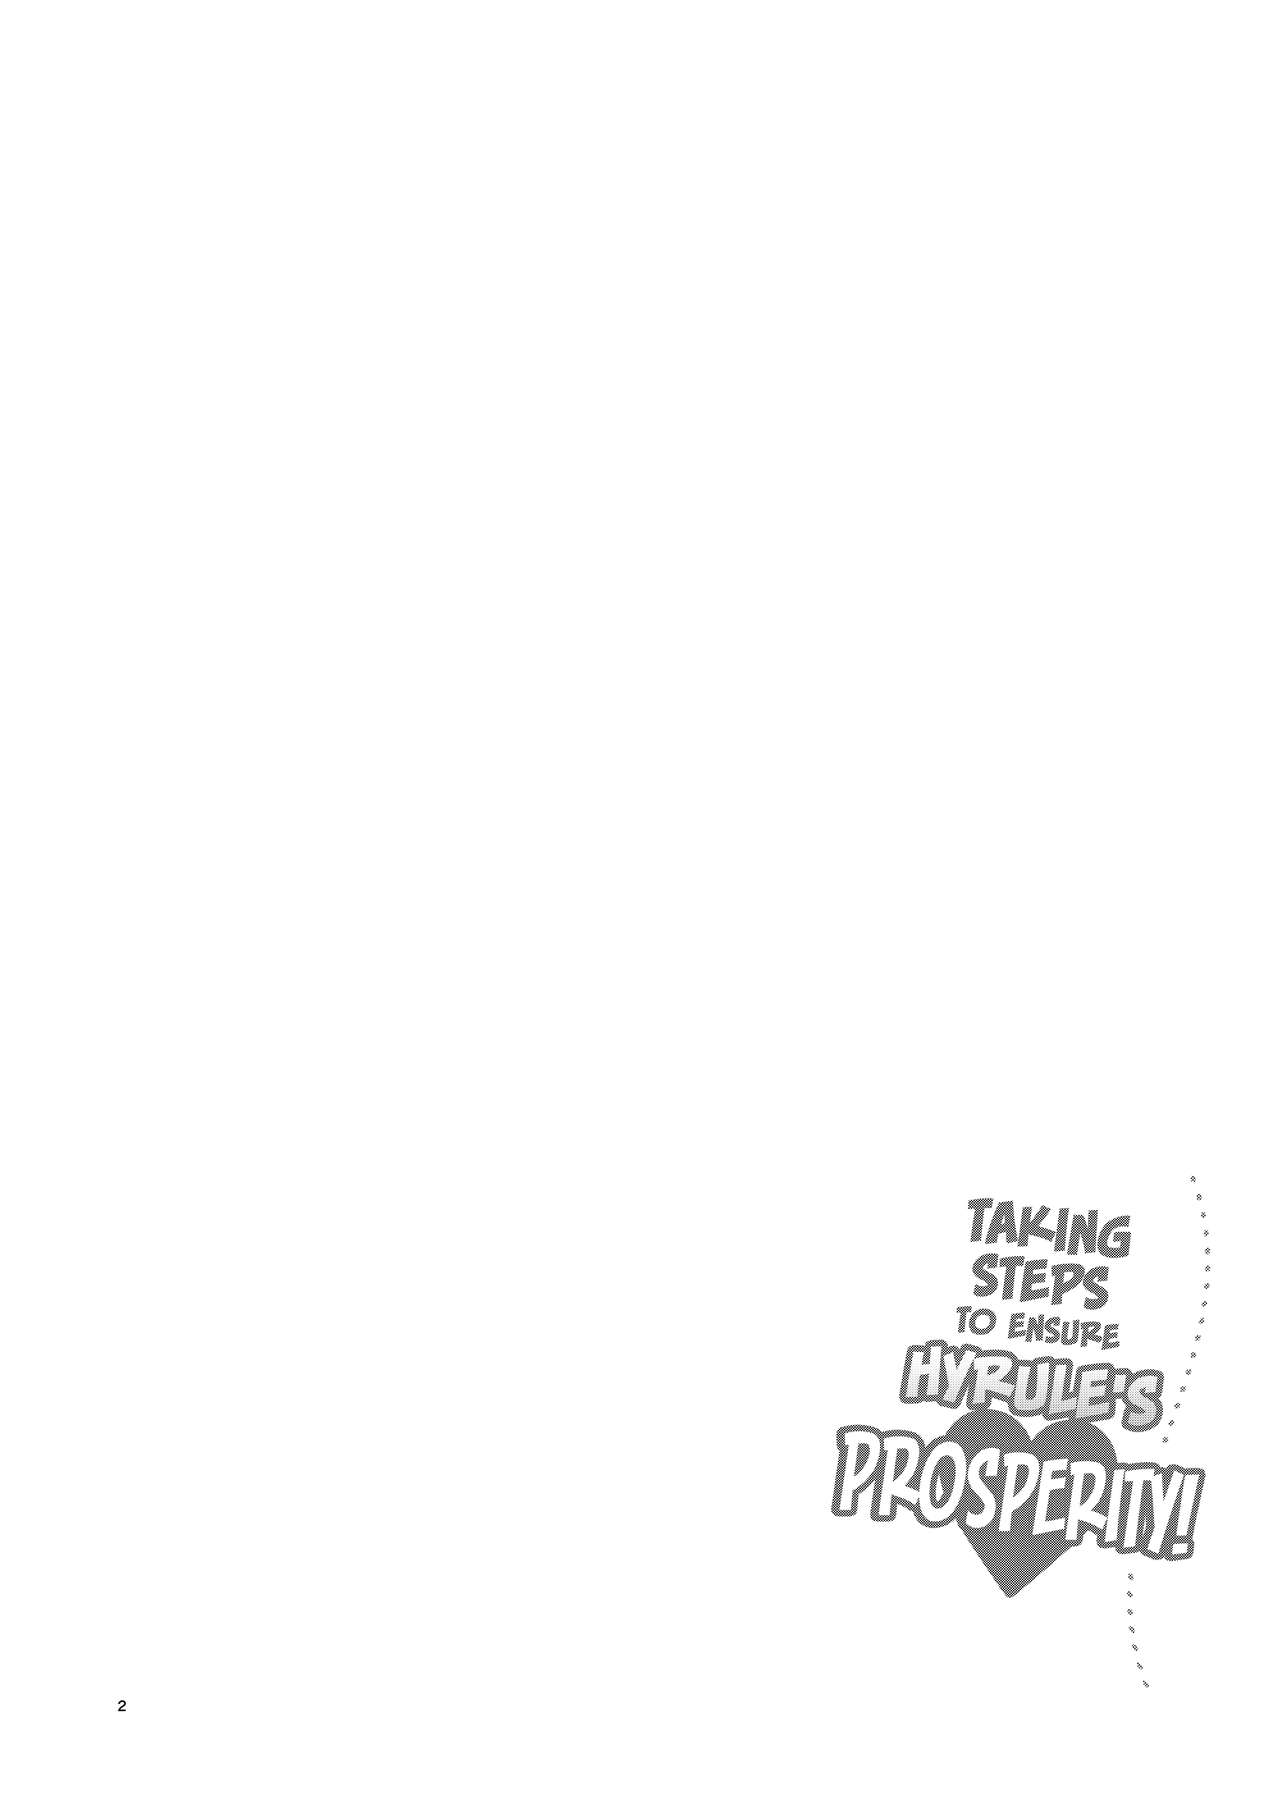 [Morittokoke (Morikoke)] Hyrule Hanei no Tame no Katsudou! | Taking Steps to Ensure Hyrule's Prosperity! (The Legend of Zelda) [English] =The Lost Light= [Digital] [もりっとこけ (もり苔)] ハイラル繁栄のためのかつどう! (ゼルダの伝説) [英訳] [DL版]